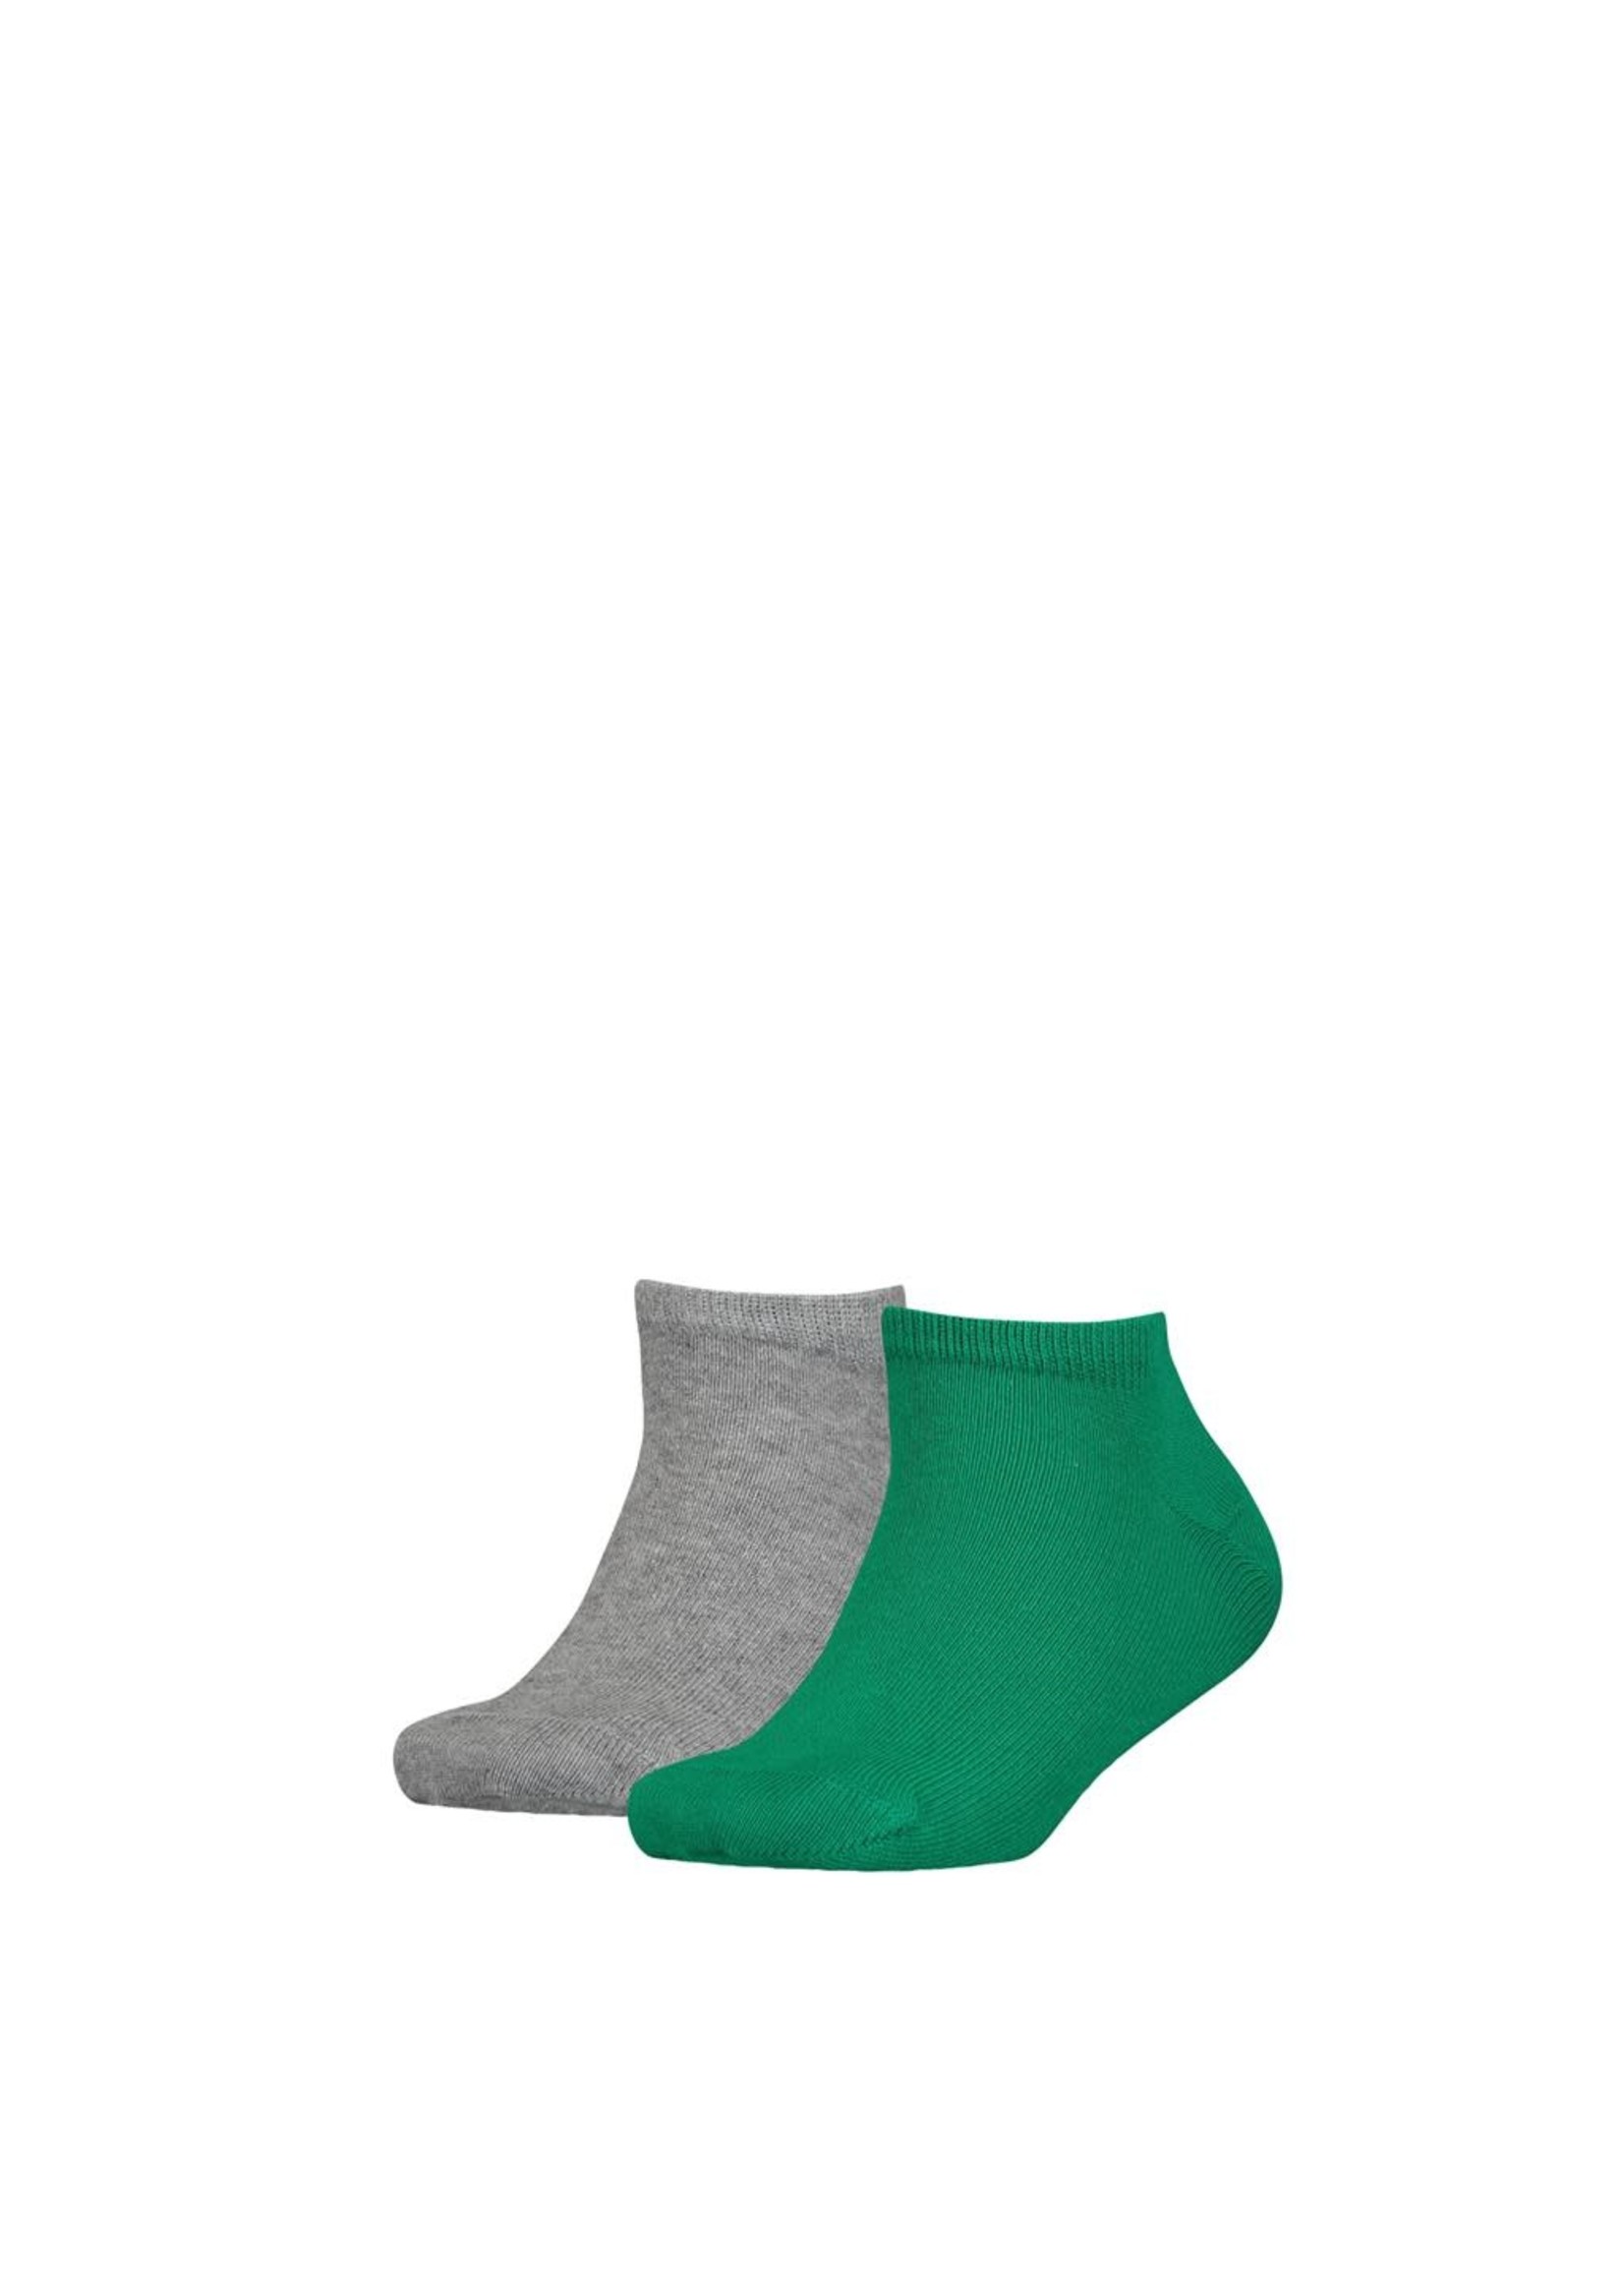 Tommy Hilfiger Tommy Hilfiger sokken groen/grijs  2 paar